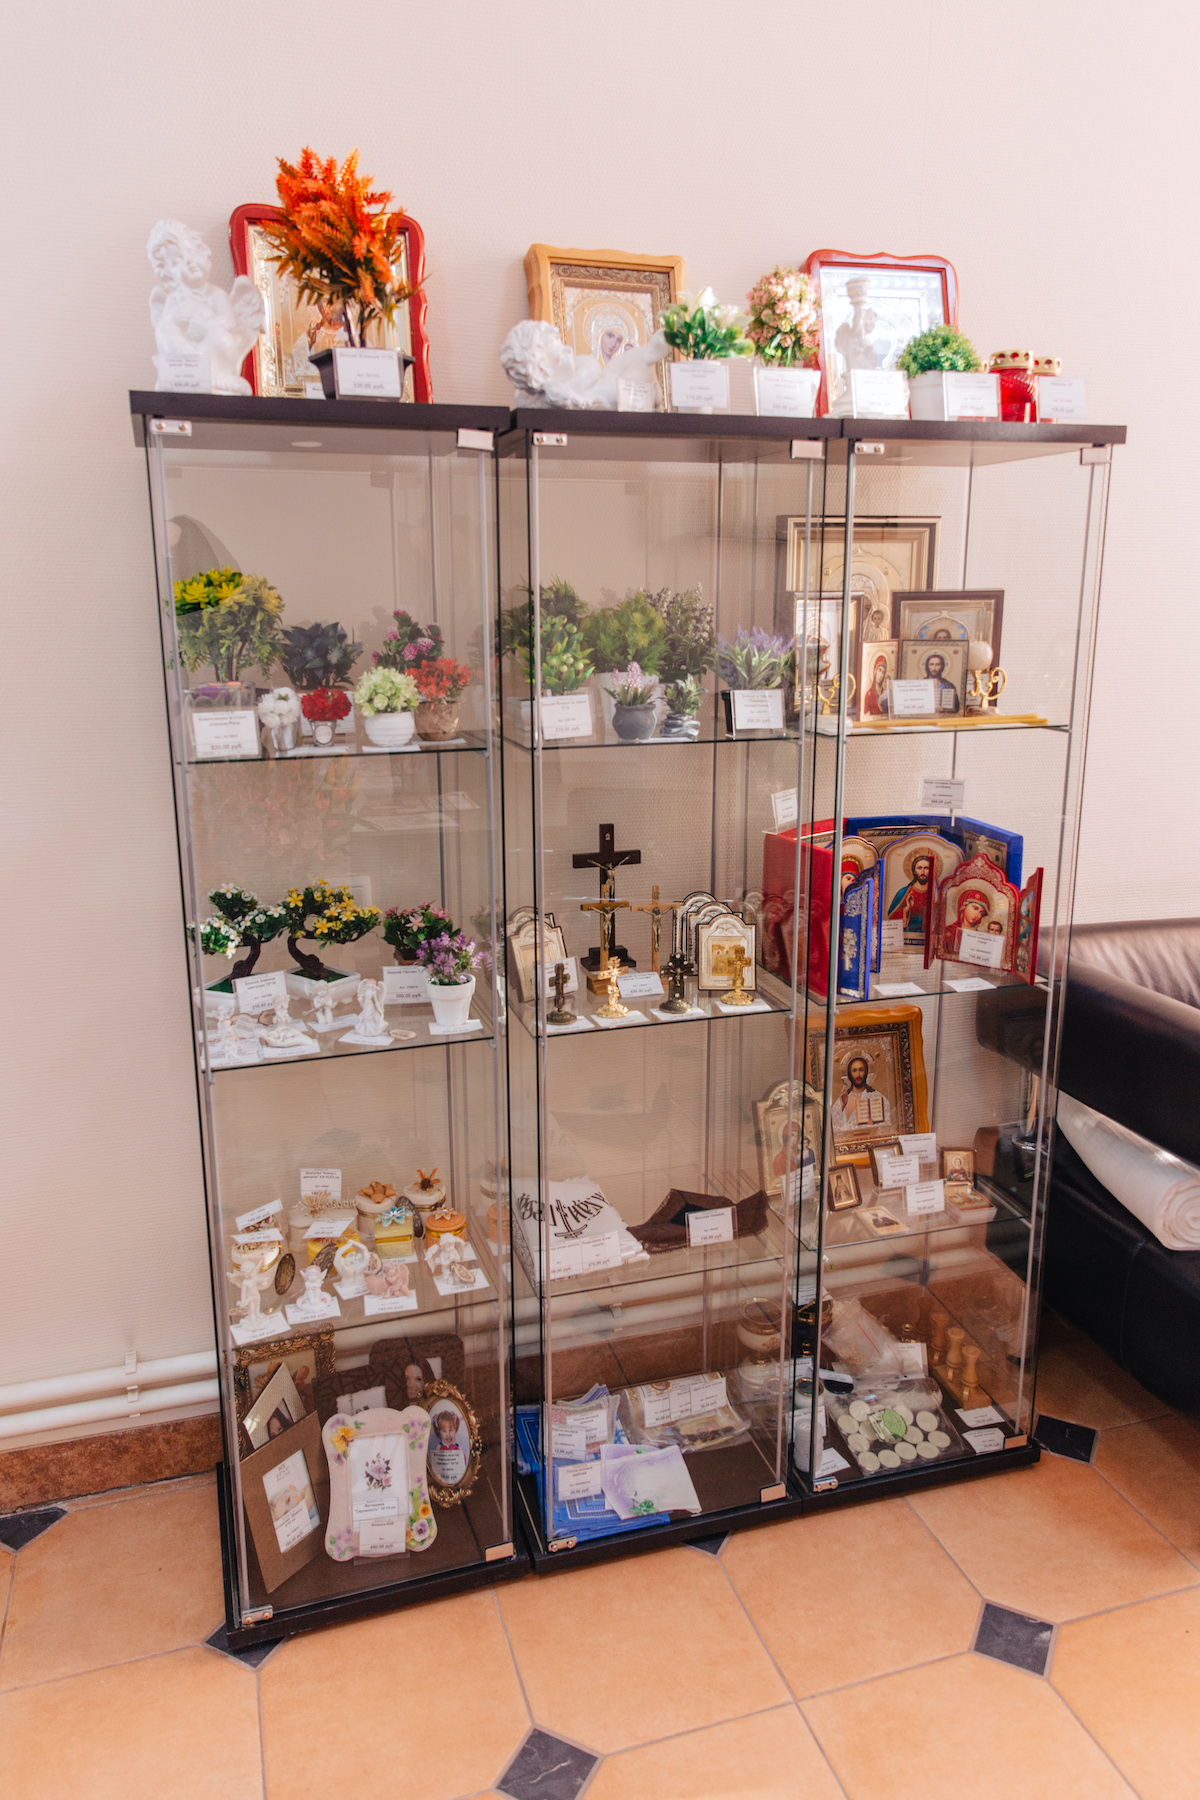 Купить ритуальные принадлежности в Барнаульском крематории